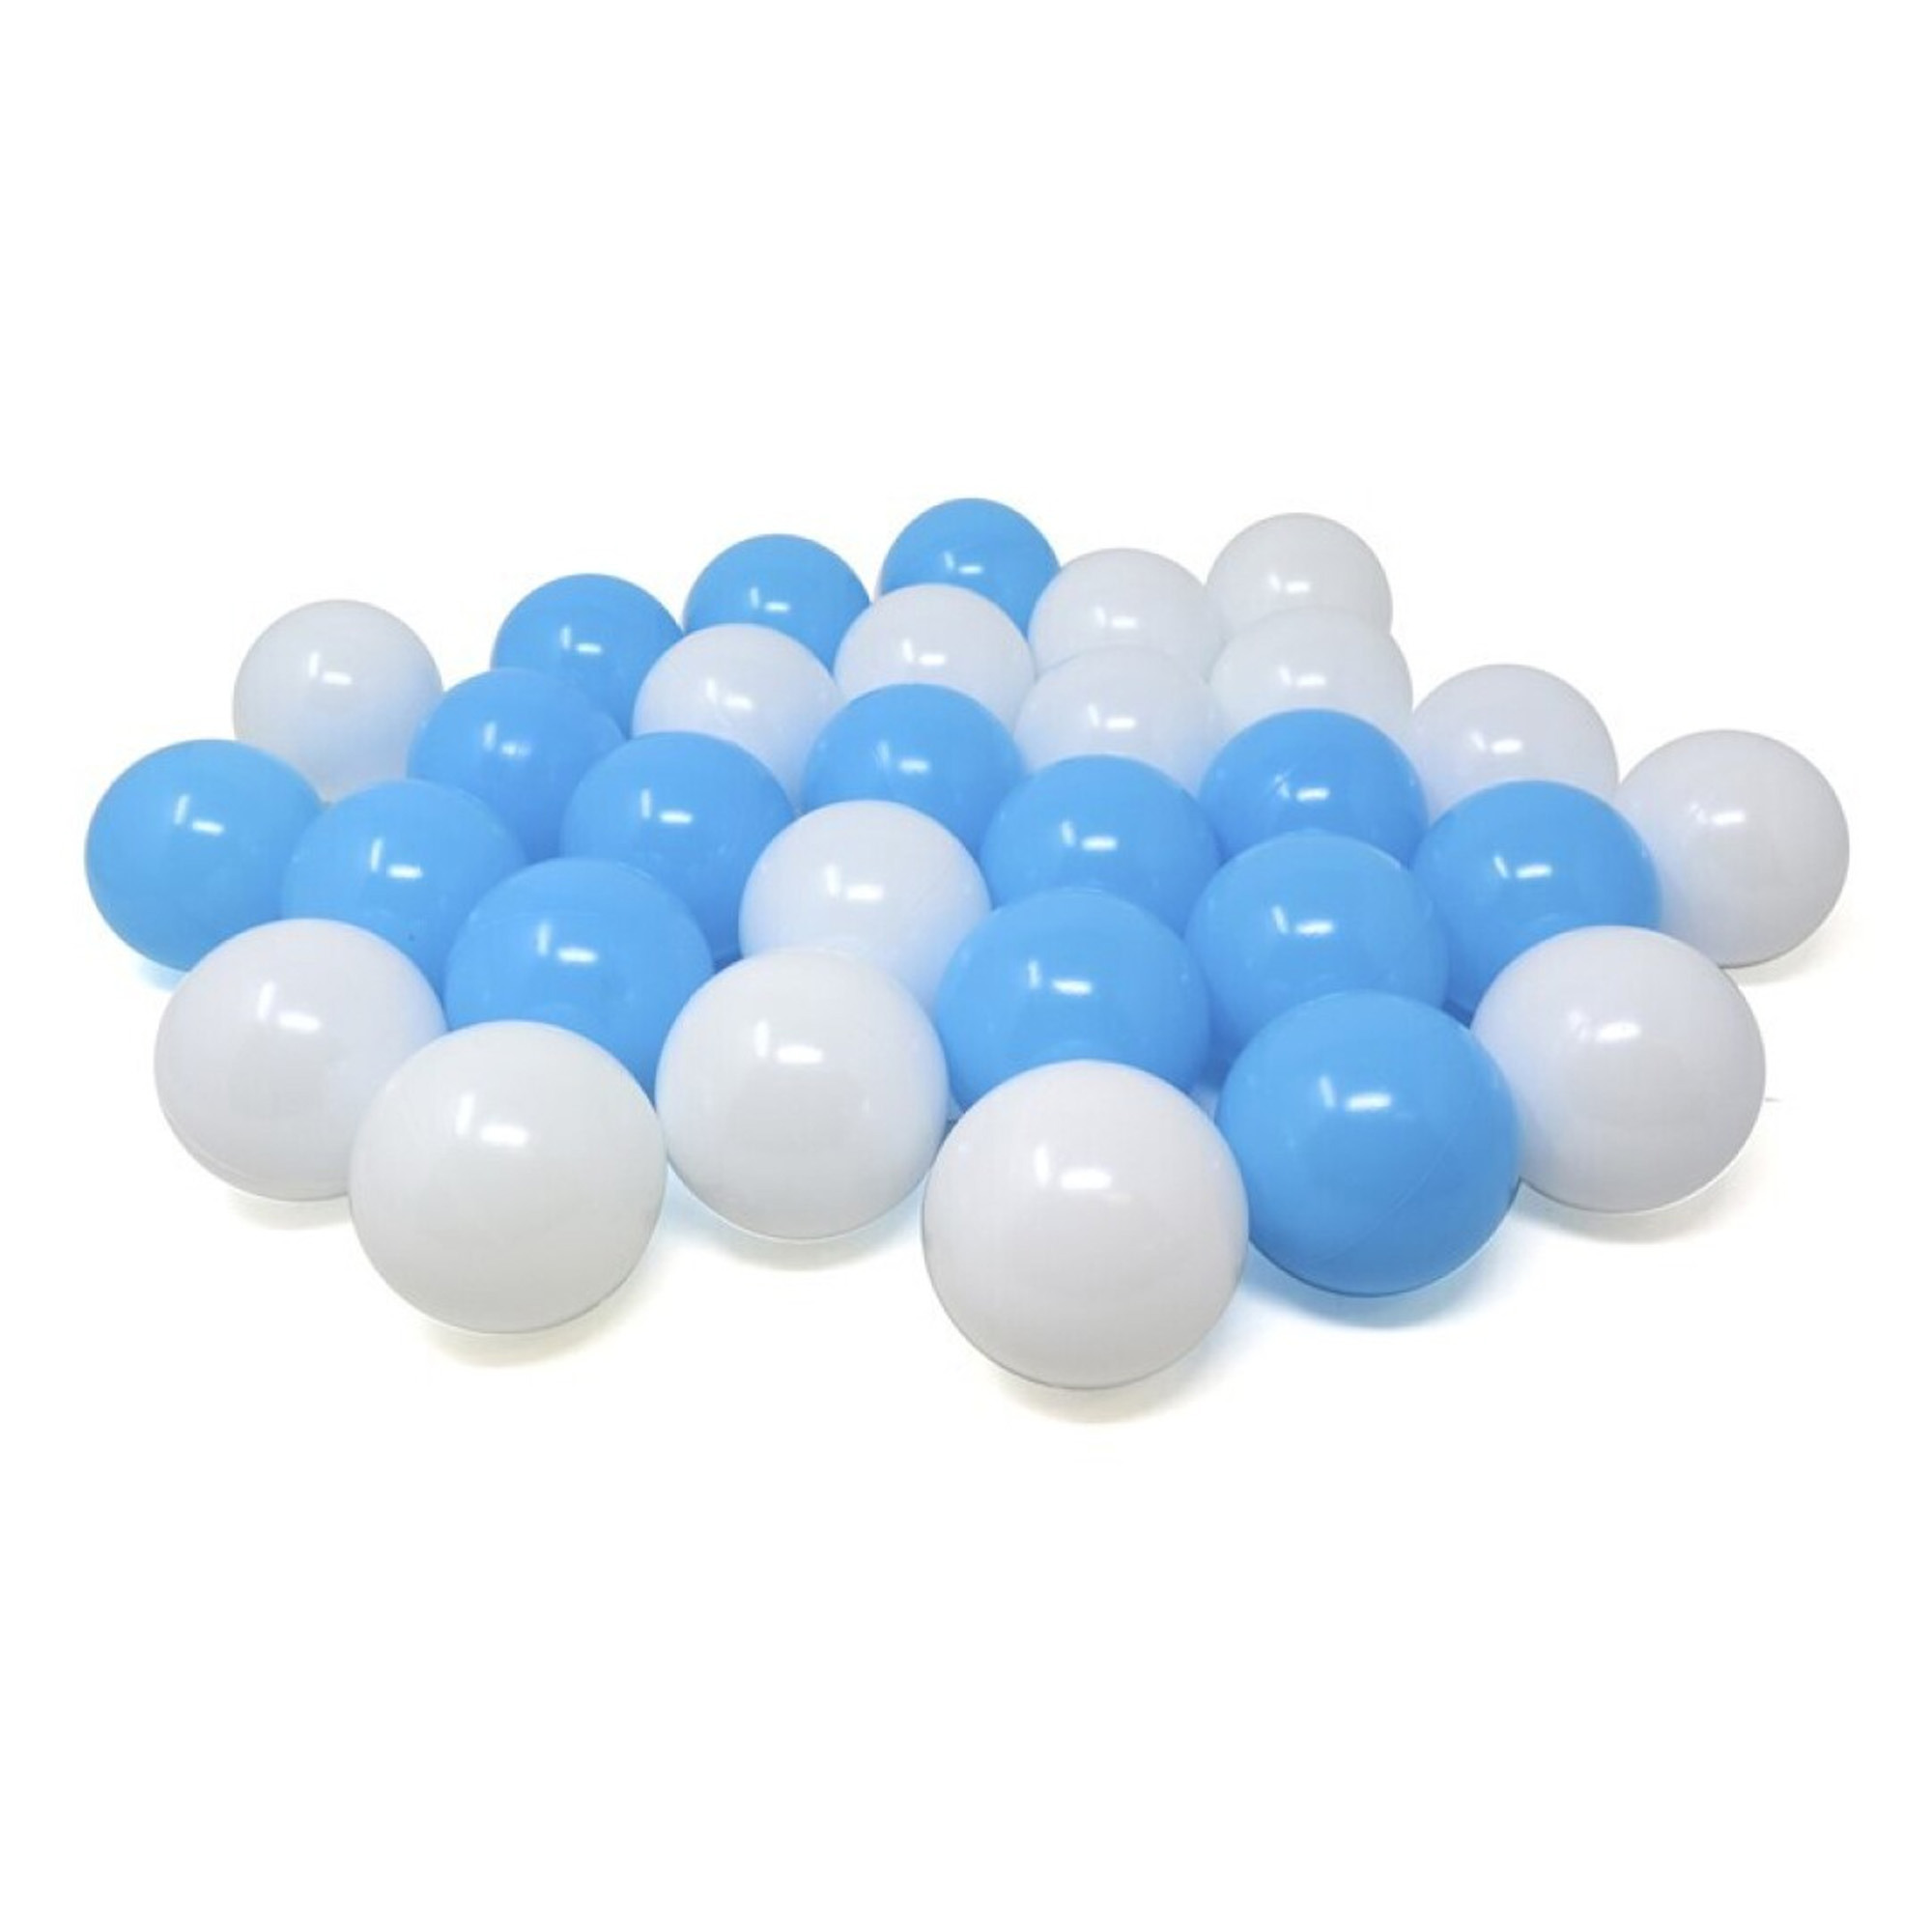 Kunststof ballenbak ballen - blauw/wit - 30x stuks - ca 6 cm